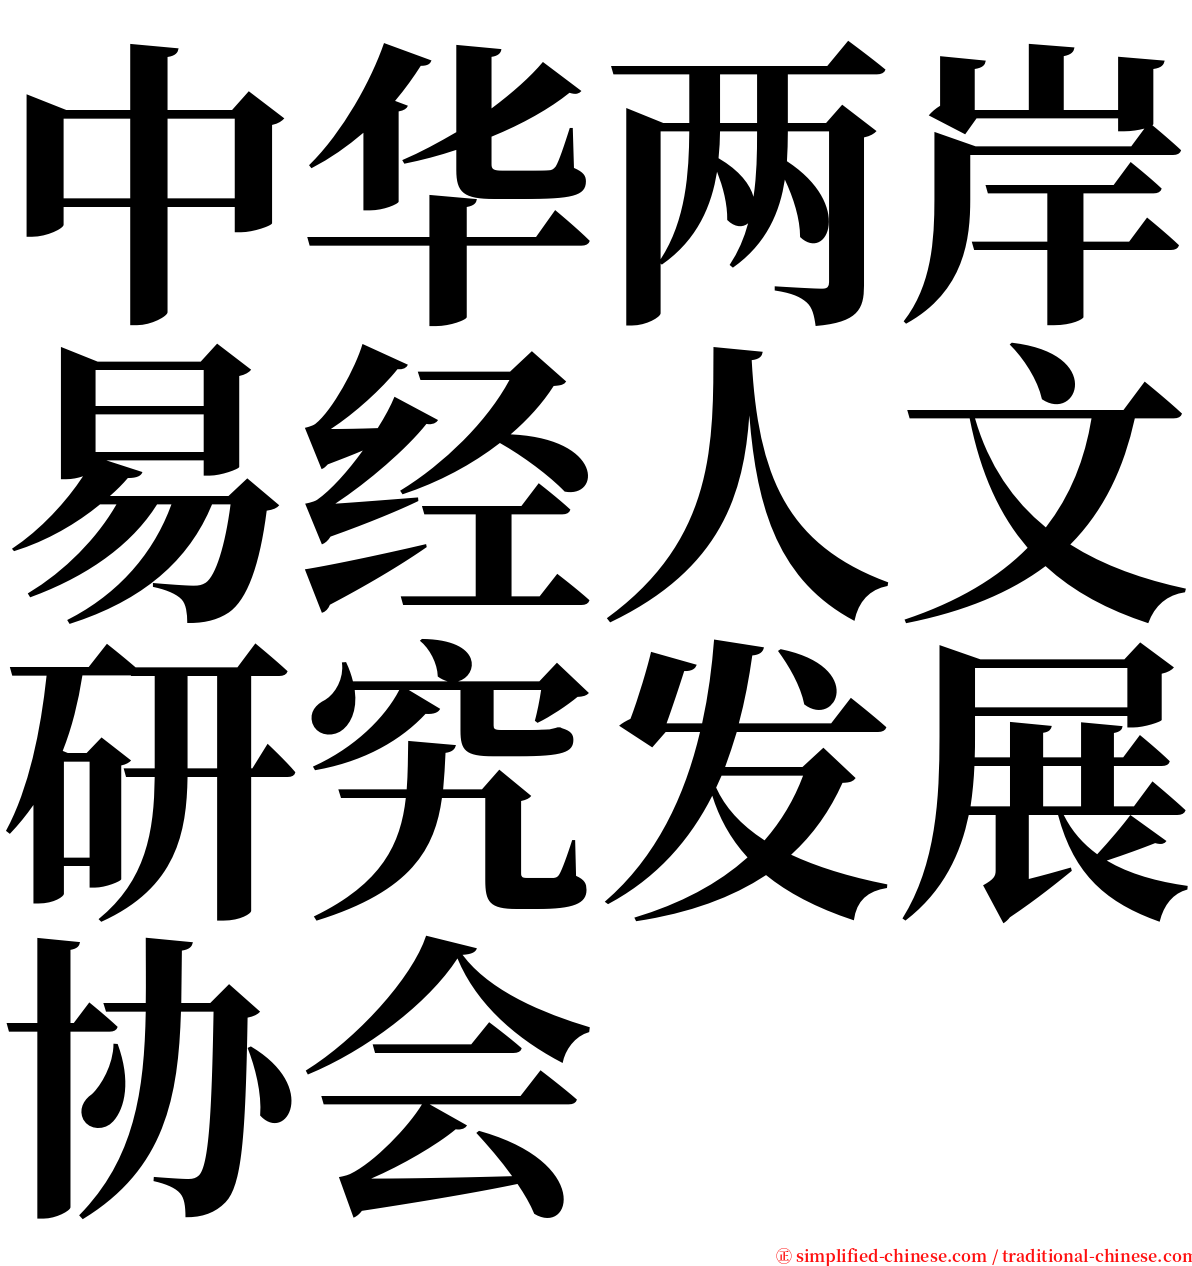 中华两岸易经人文研究发展协会 serif font